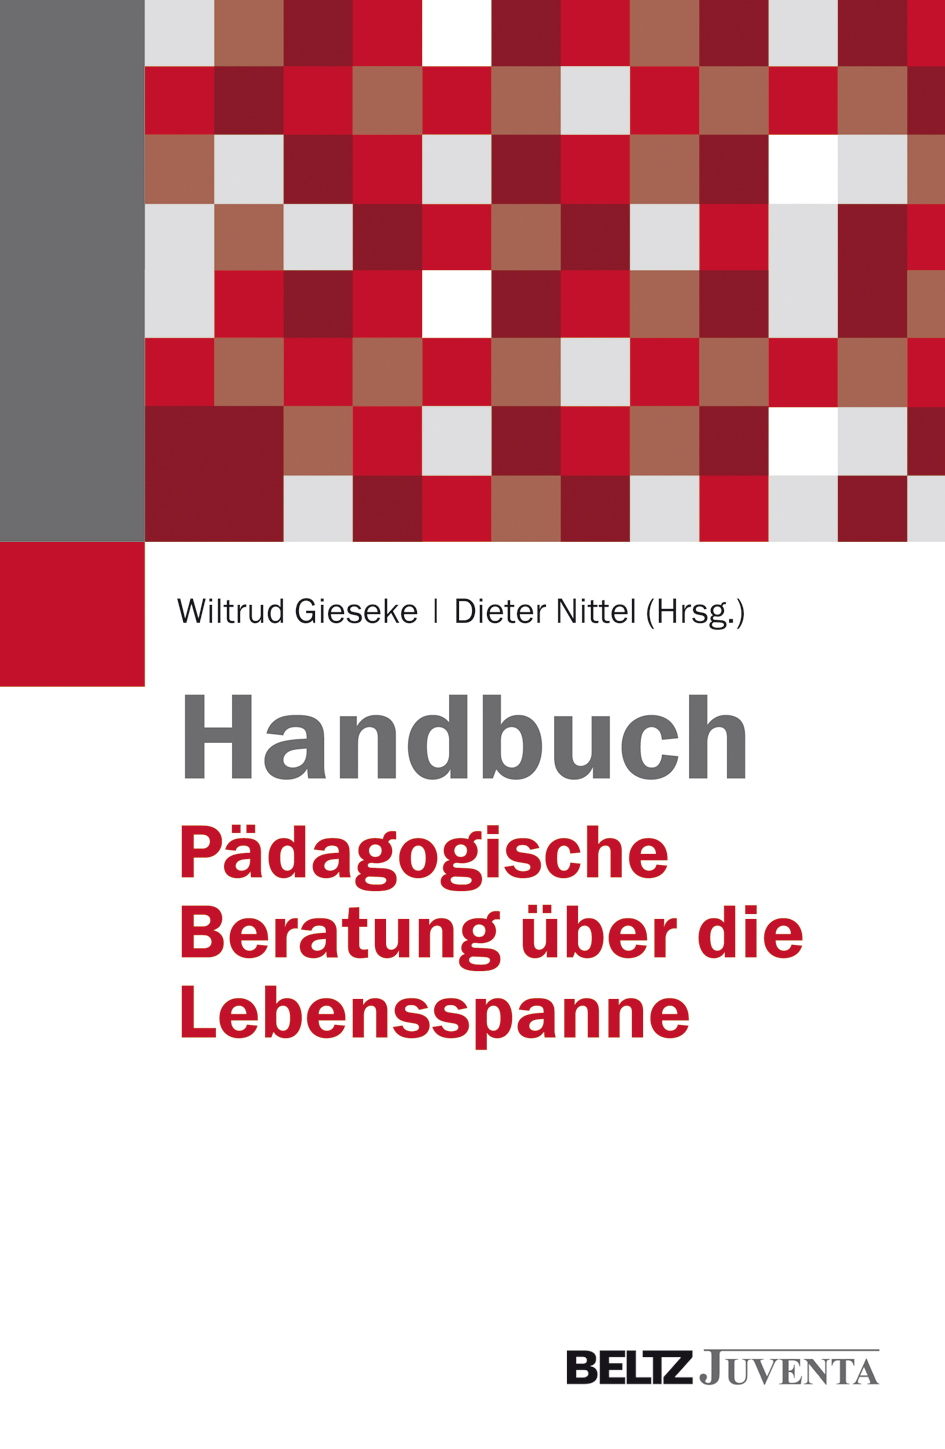 Cover_Handbuch Pädagogische Beratung über die Lebensspanne.jpg